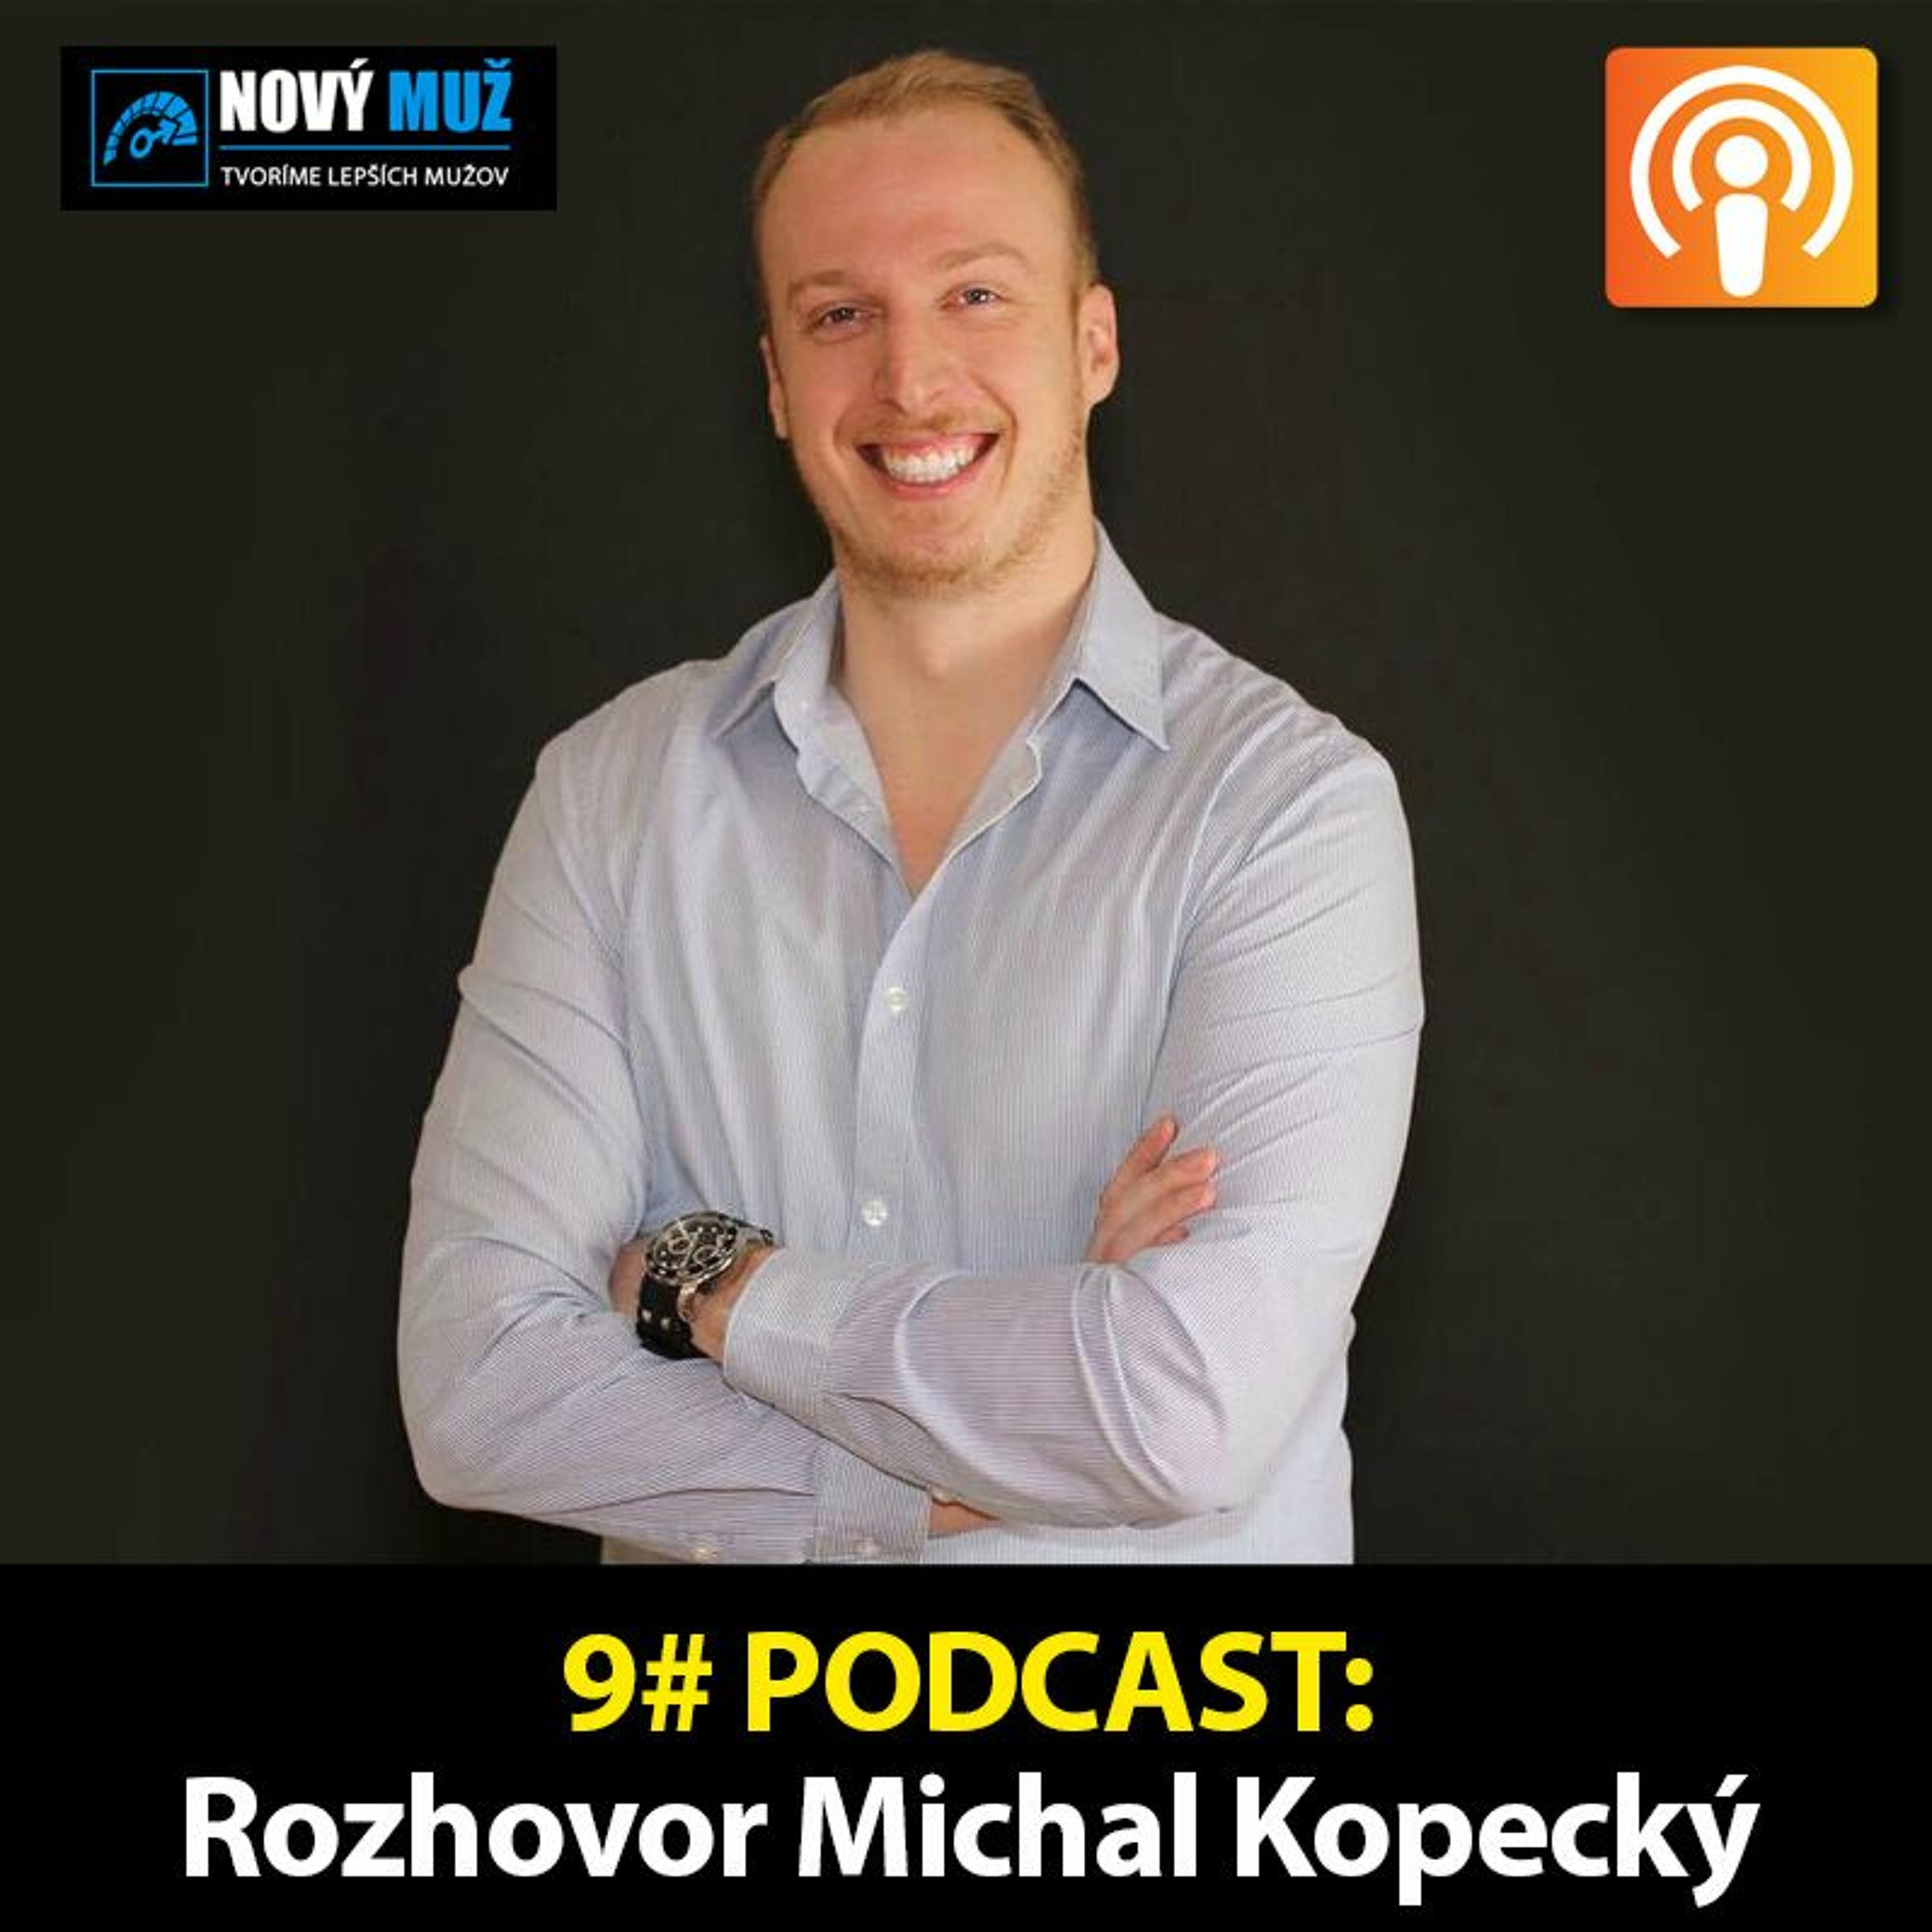 9# PODCAST - Rozhovor Michal Kopecký - Ako sa stať hodnotným chlapom